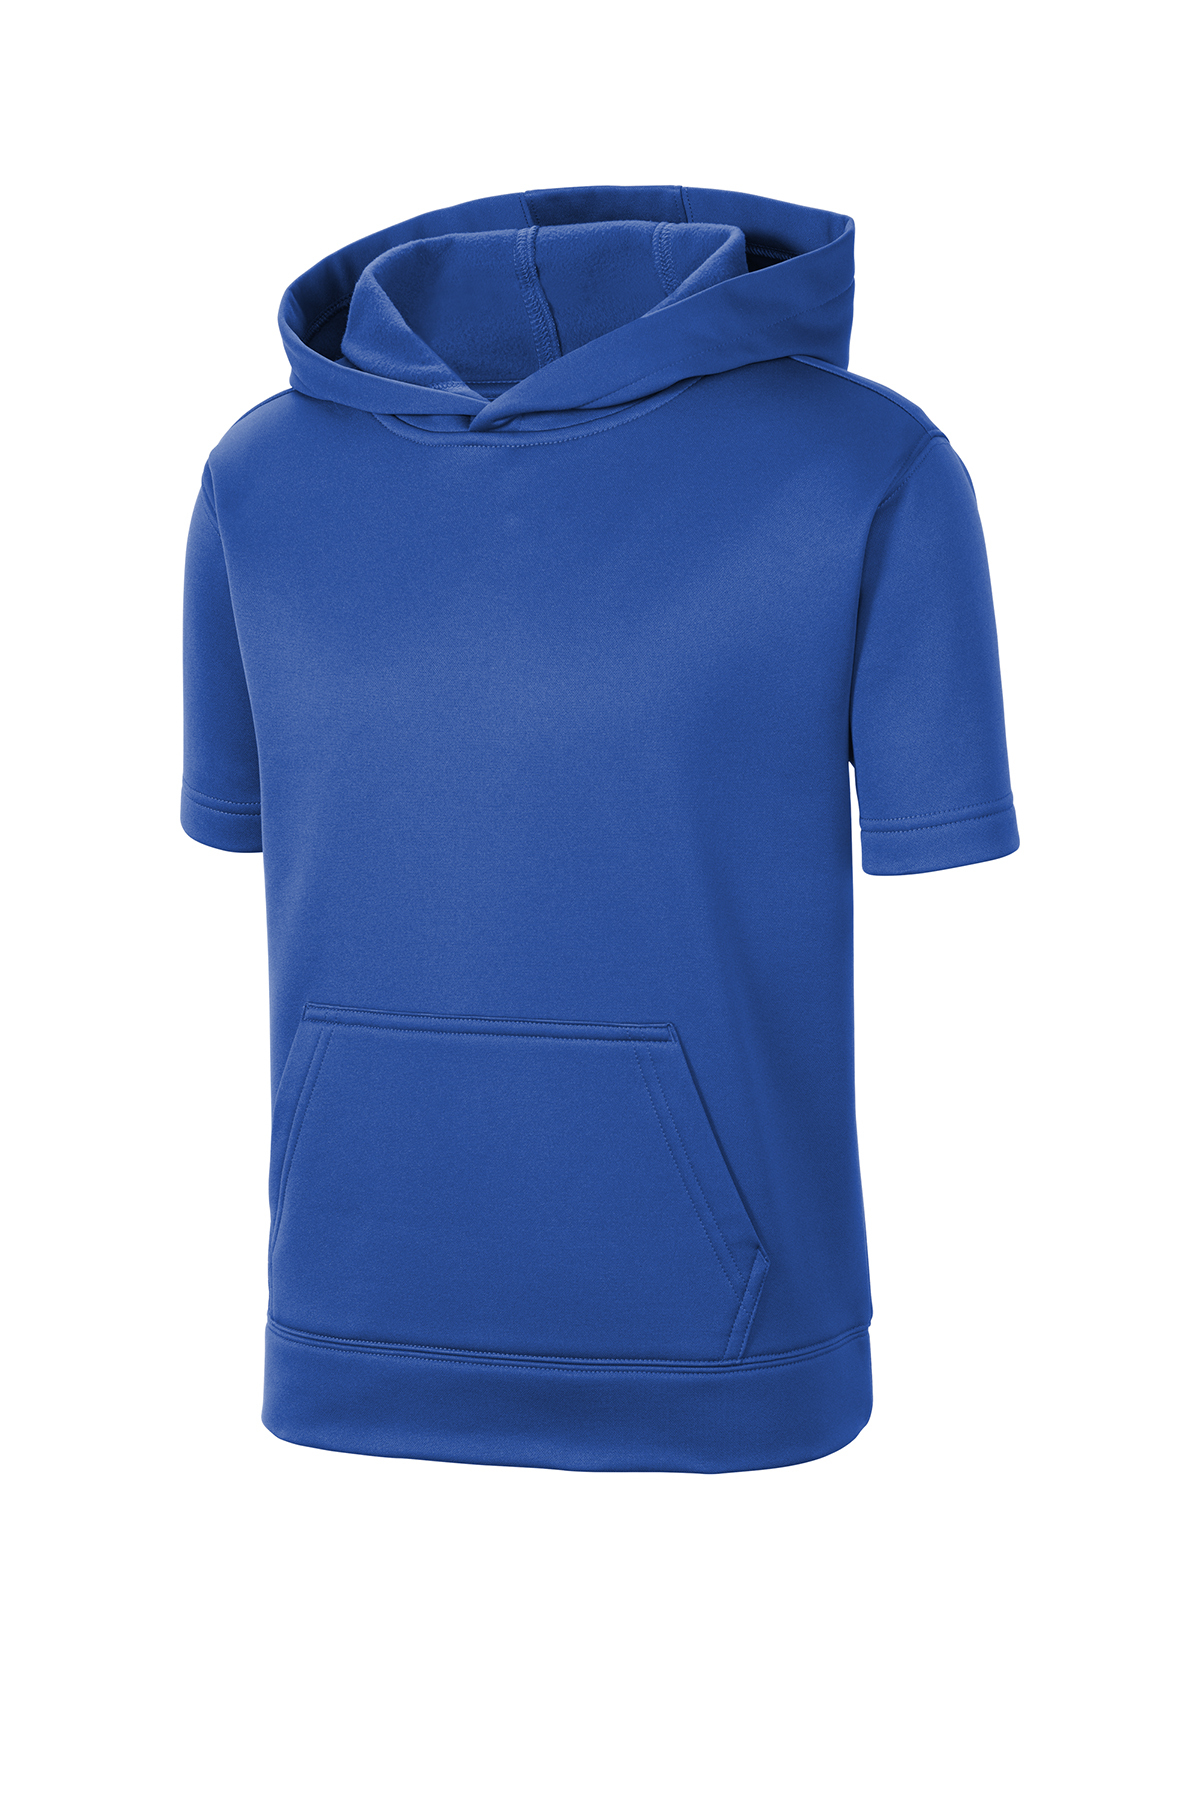 Rockets Unisex Fleece Short Sleeve Hoodie S / Heather Grey